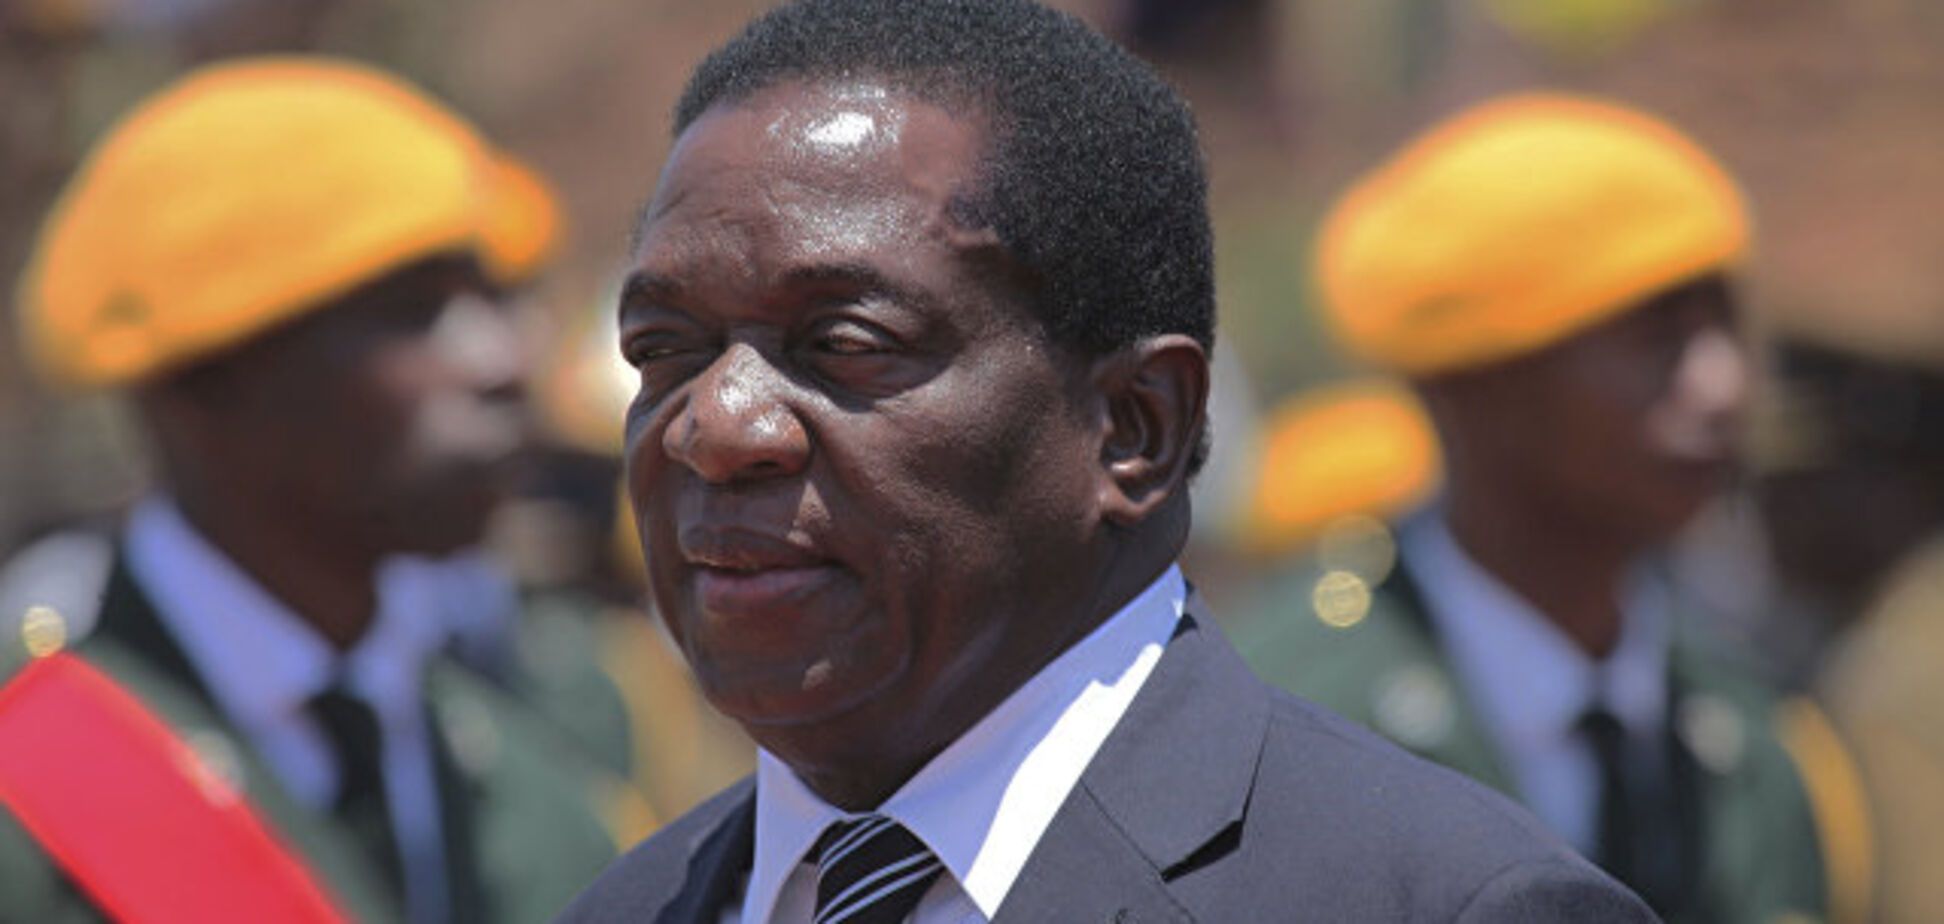 На предвыборном митинге президента Зимбабве прогремел взрыв: есть пострадавшие